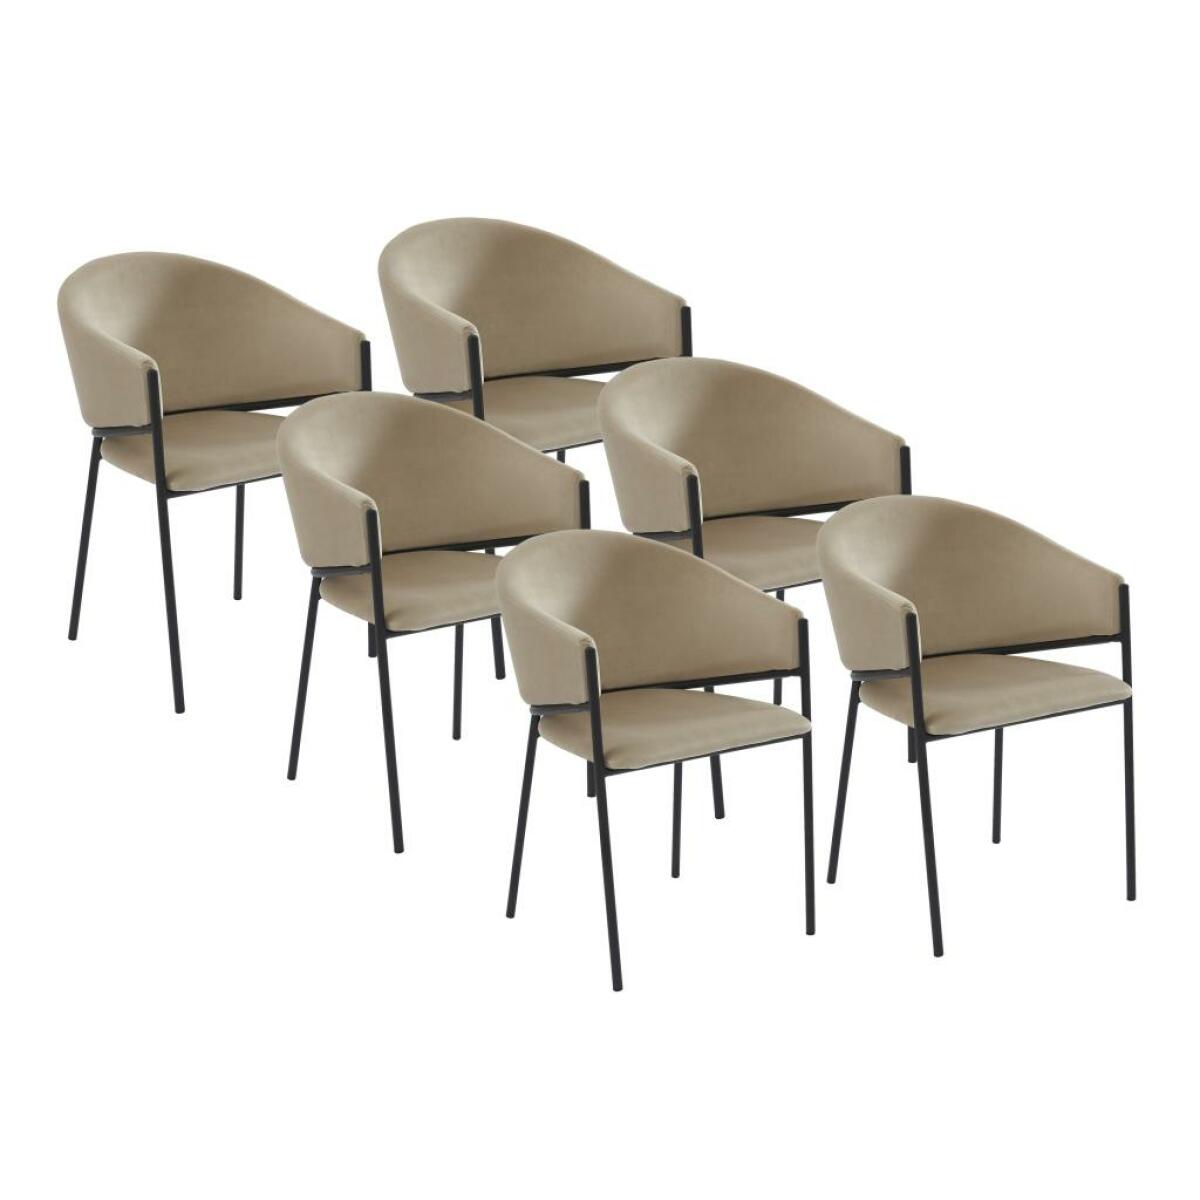 pascal morabito lot de 6 chaises avec accoudoirs en velours et métal noir - beige - ordida de pascal morabito  beige